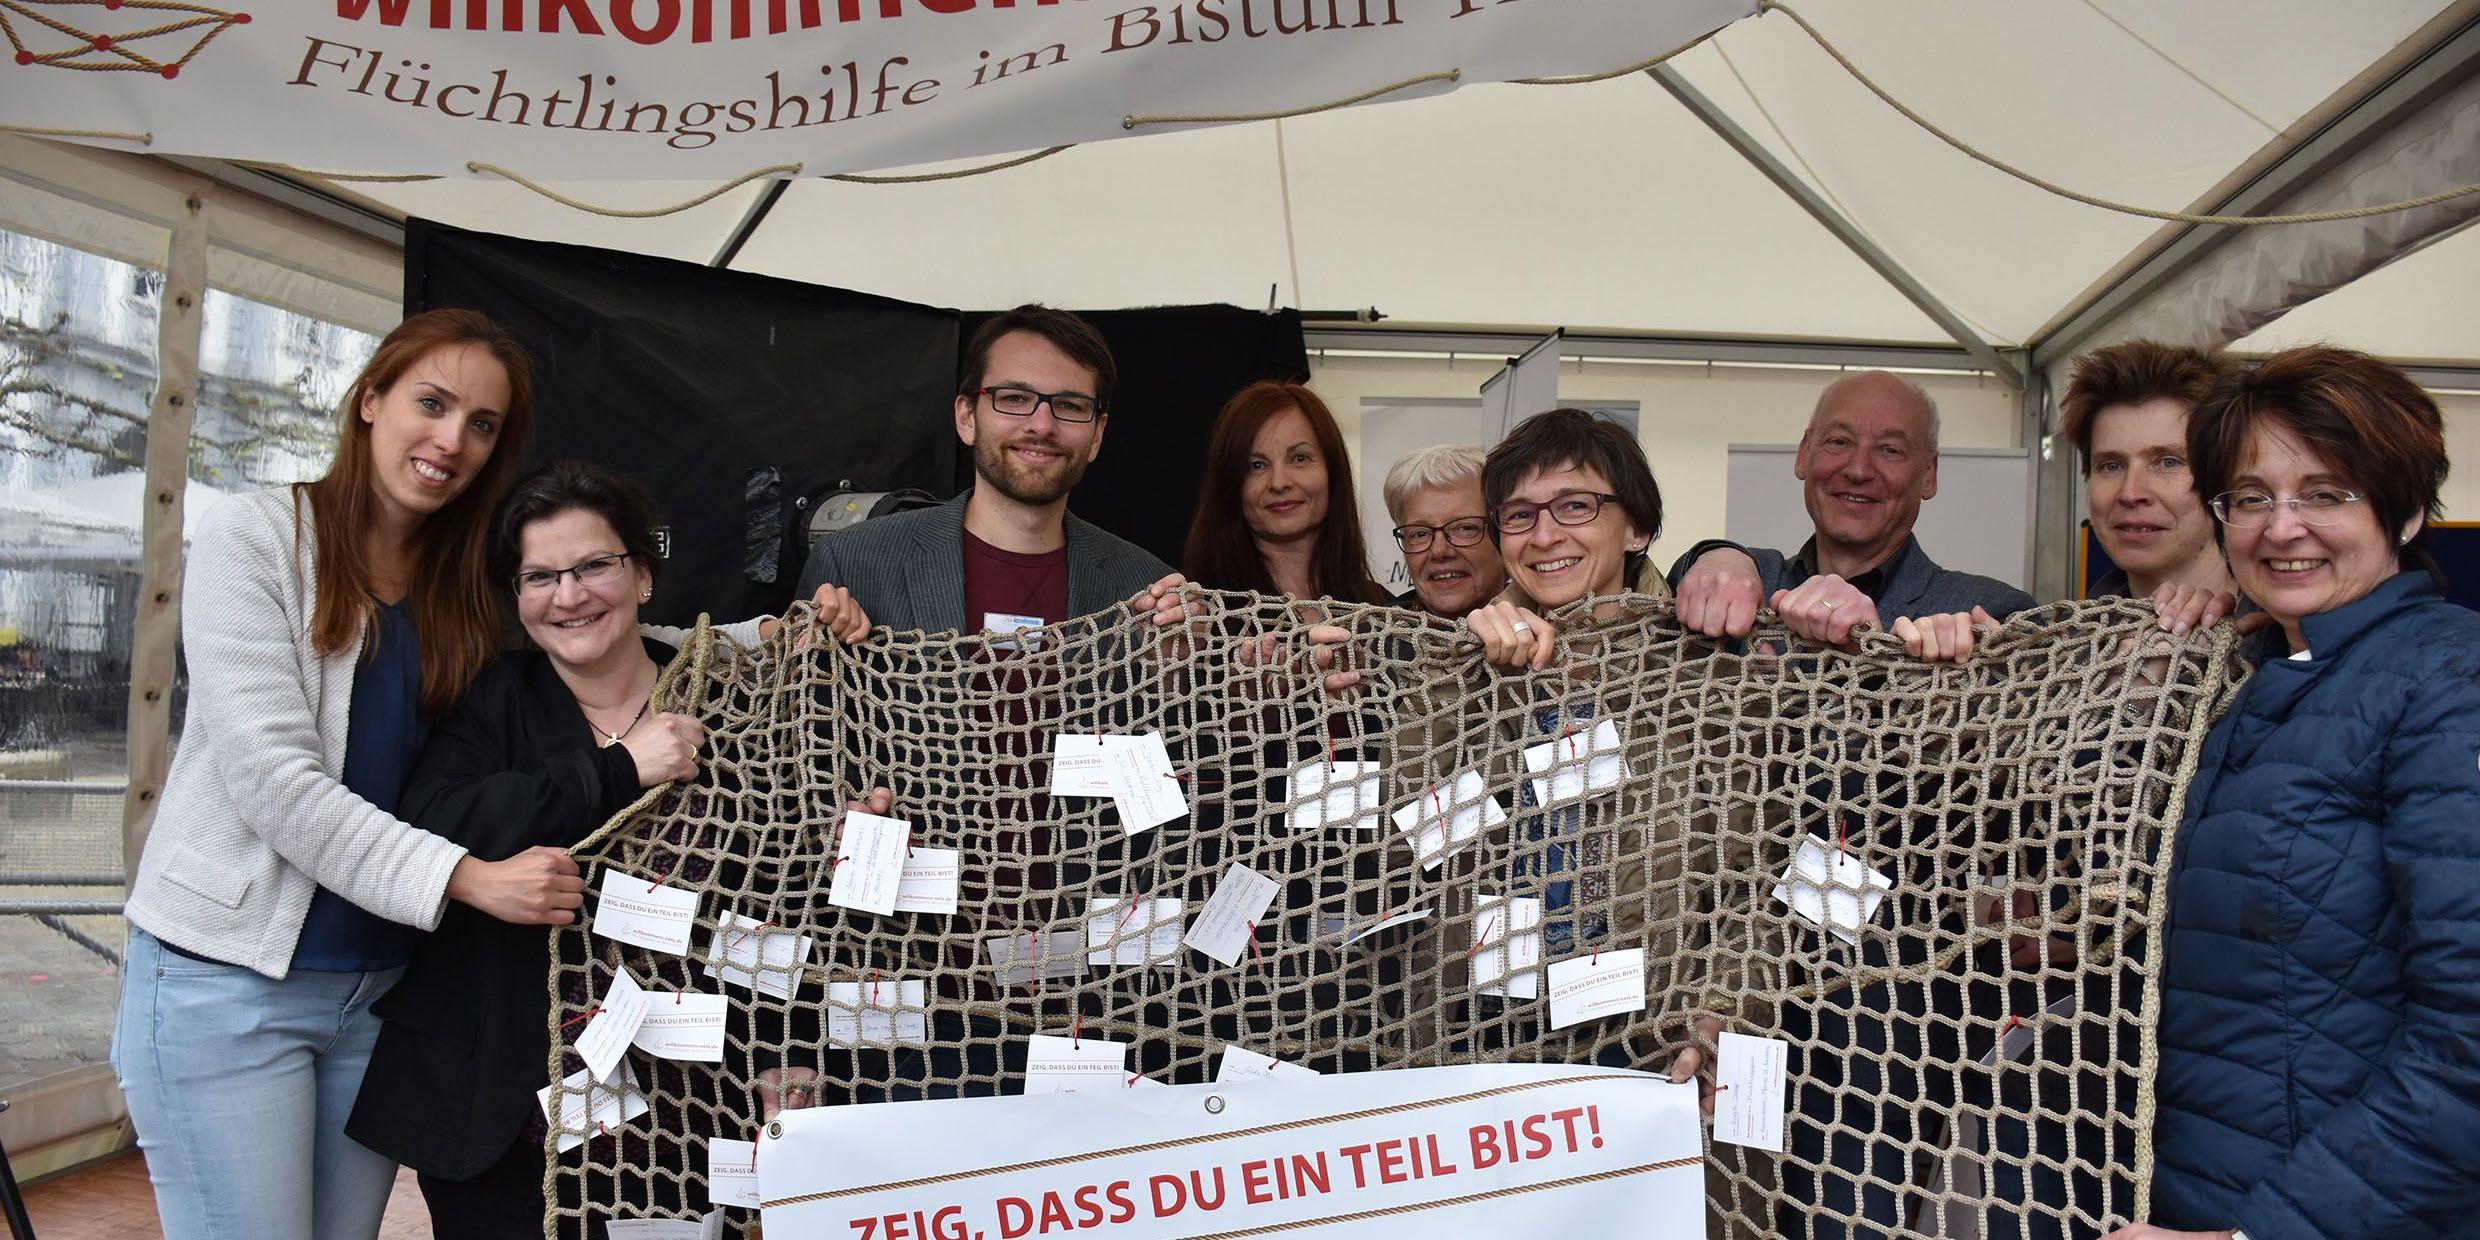 Ein Netz, an dem viele mitgeknüpft haben: Das Projekt „willkommens-netz.de“ für Flüchtlingsarbeit im Bistum hat sich 2017 auch bei den Heilig-Rock-Tagen auf dem Domfreihof und auf dem Hauptmarkt präsentiert. Foto: Zeljko Jakobovac